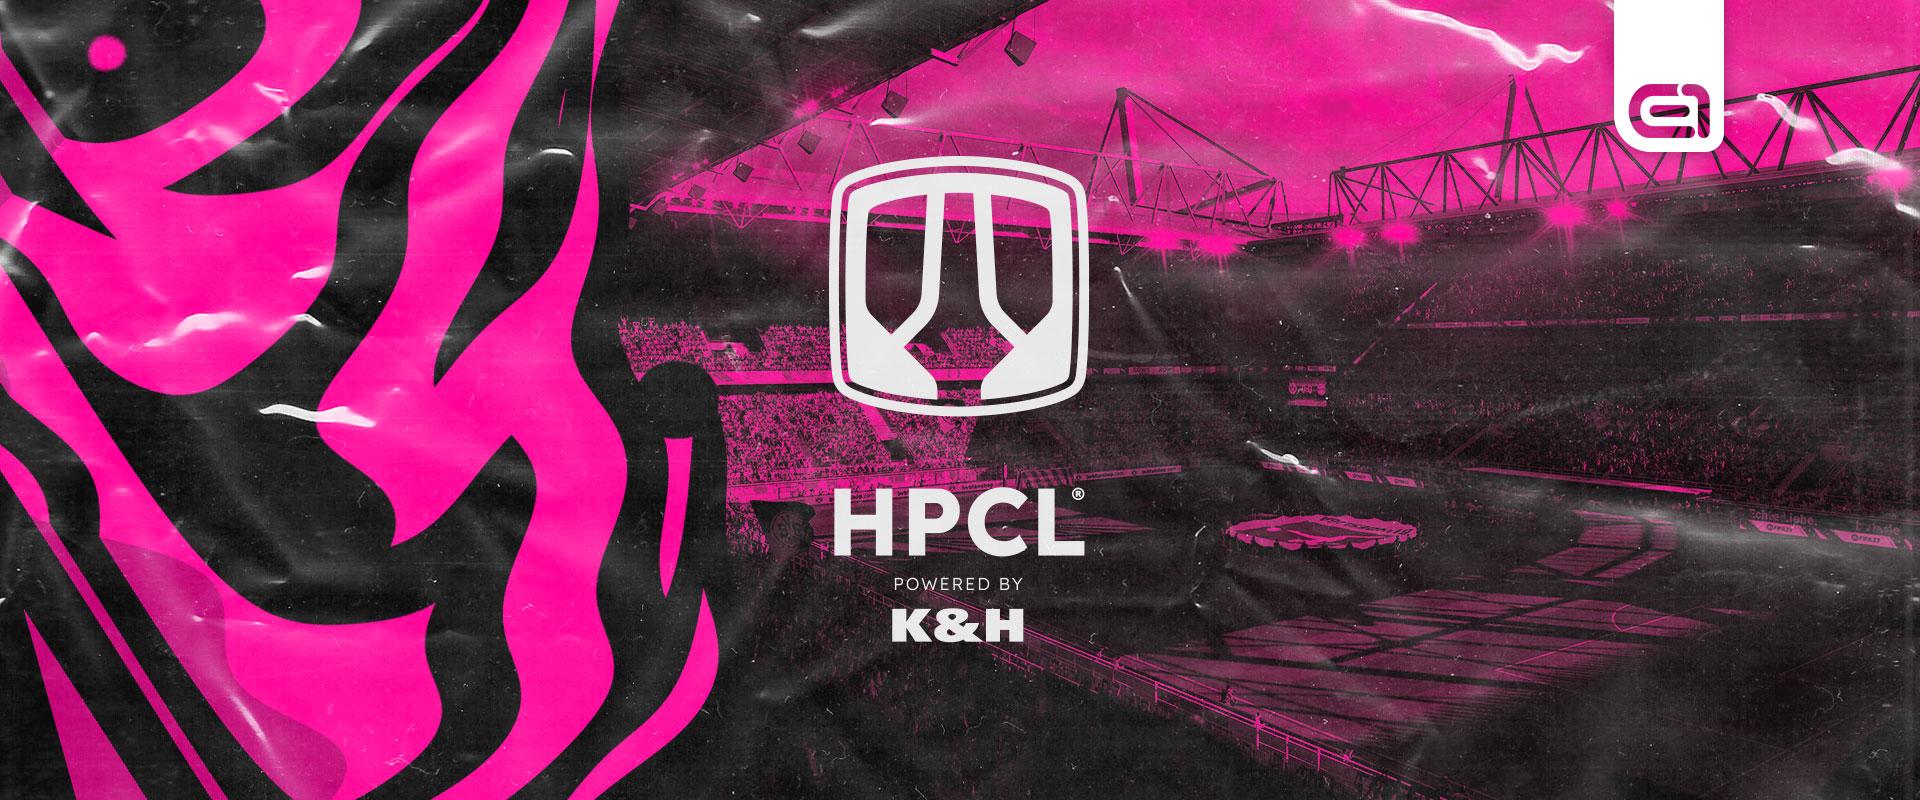 HPCL powered by K&H: Szoros a tabella, de még semmi sem dőlt el!